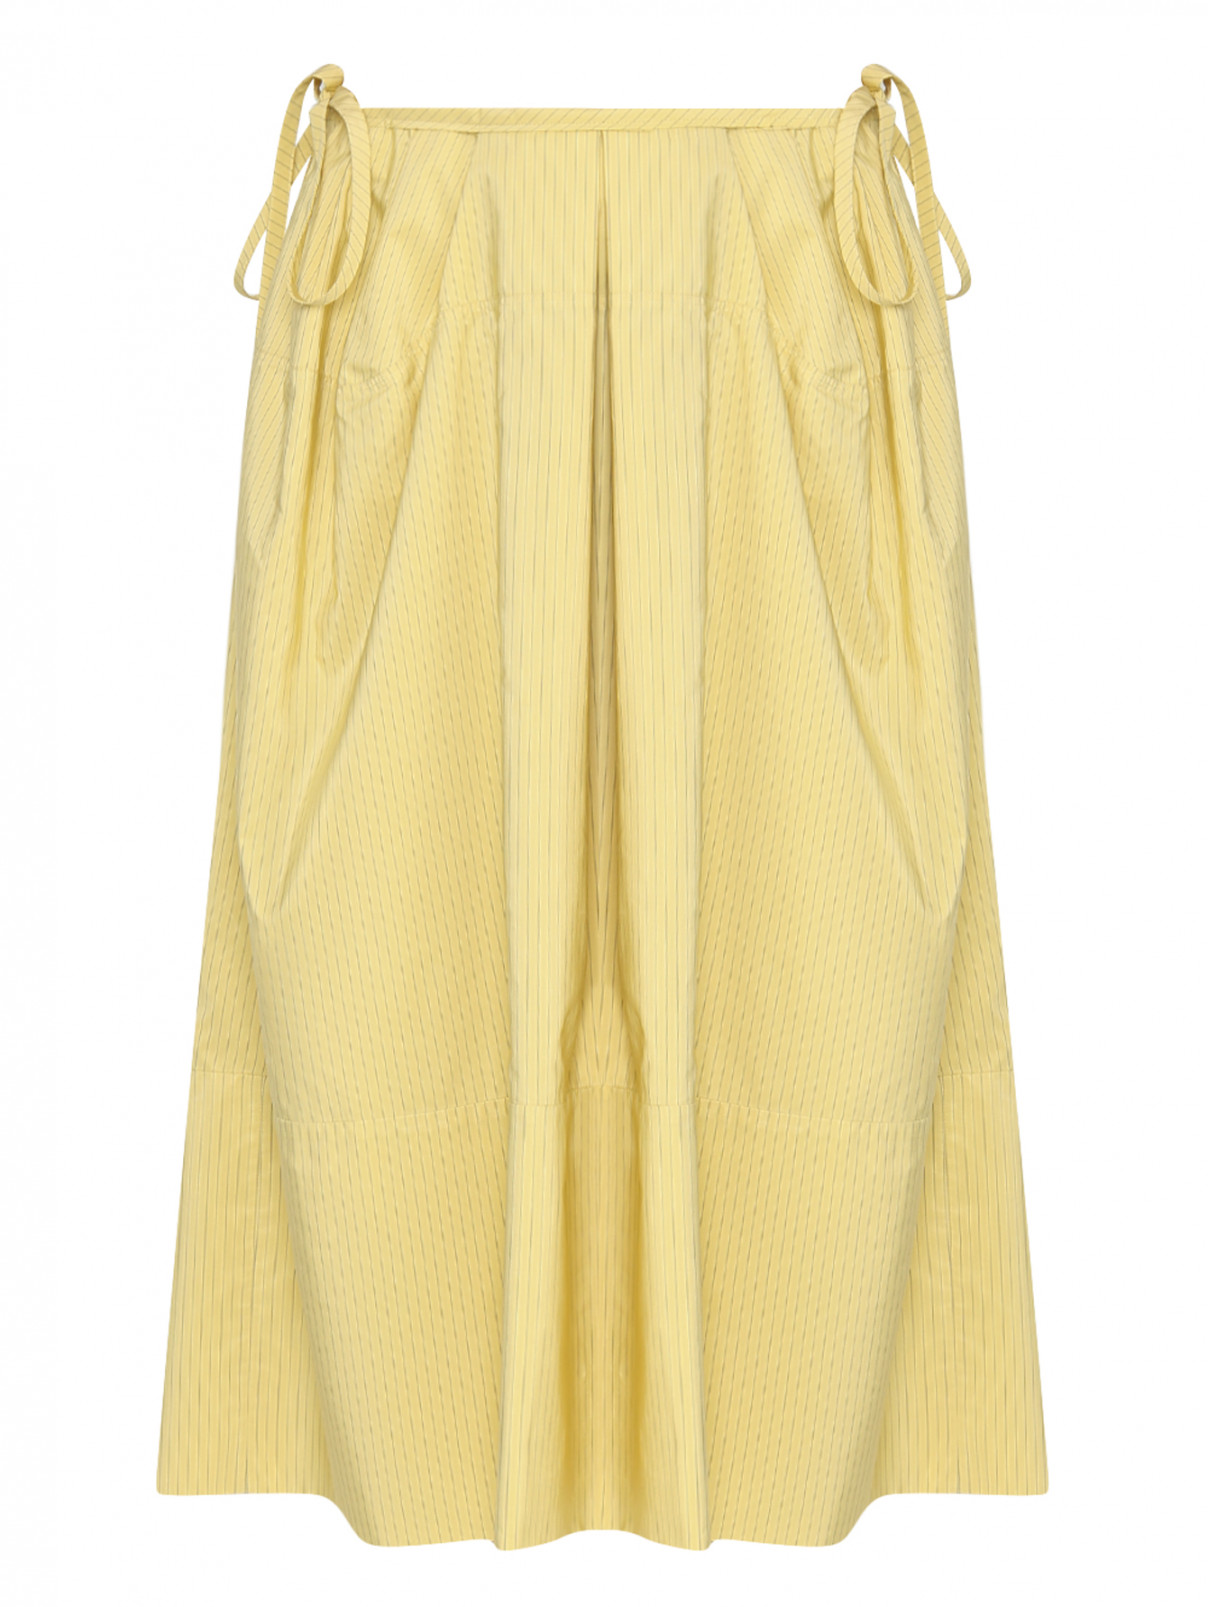 Юбка с драпировкой Jil Sander  –  Общий вид  – Цвет:  Желтый